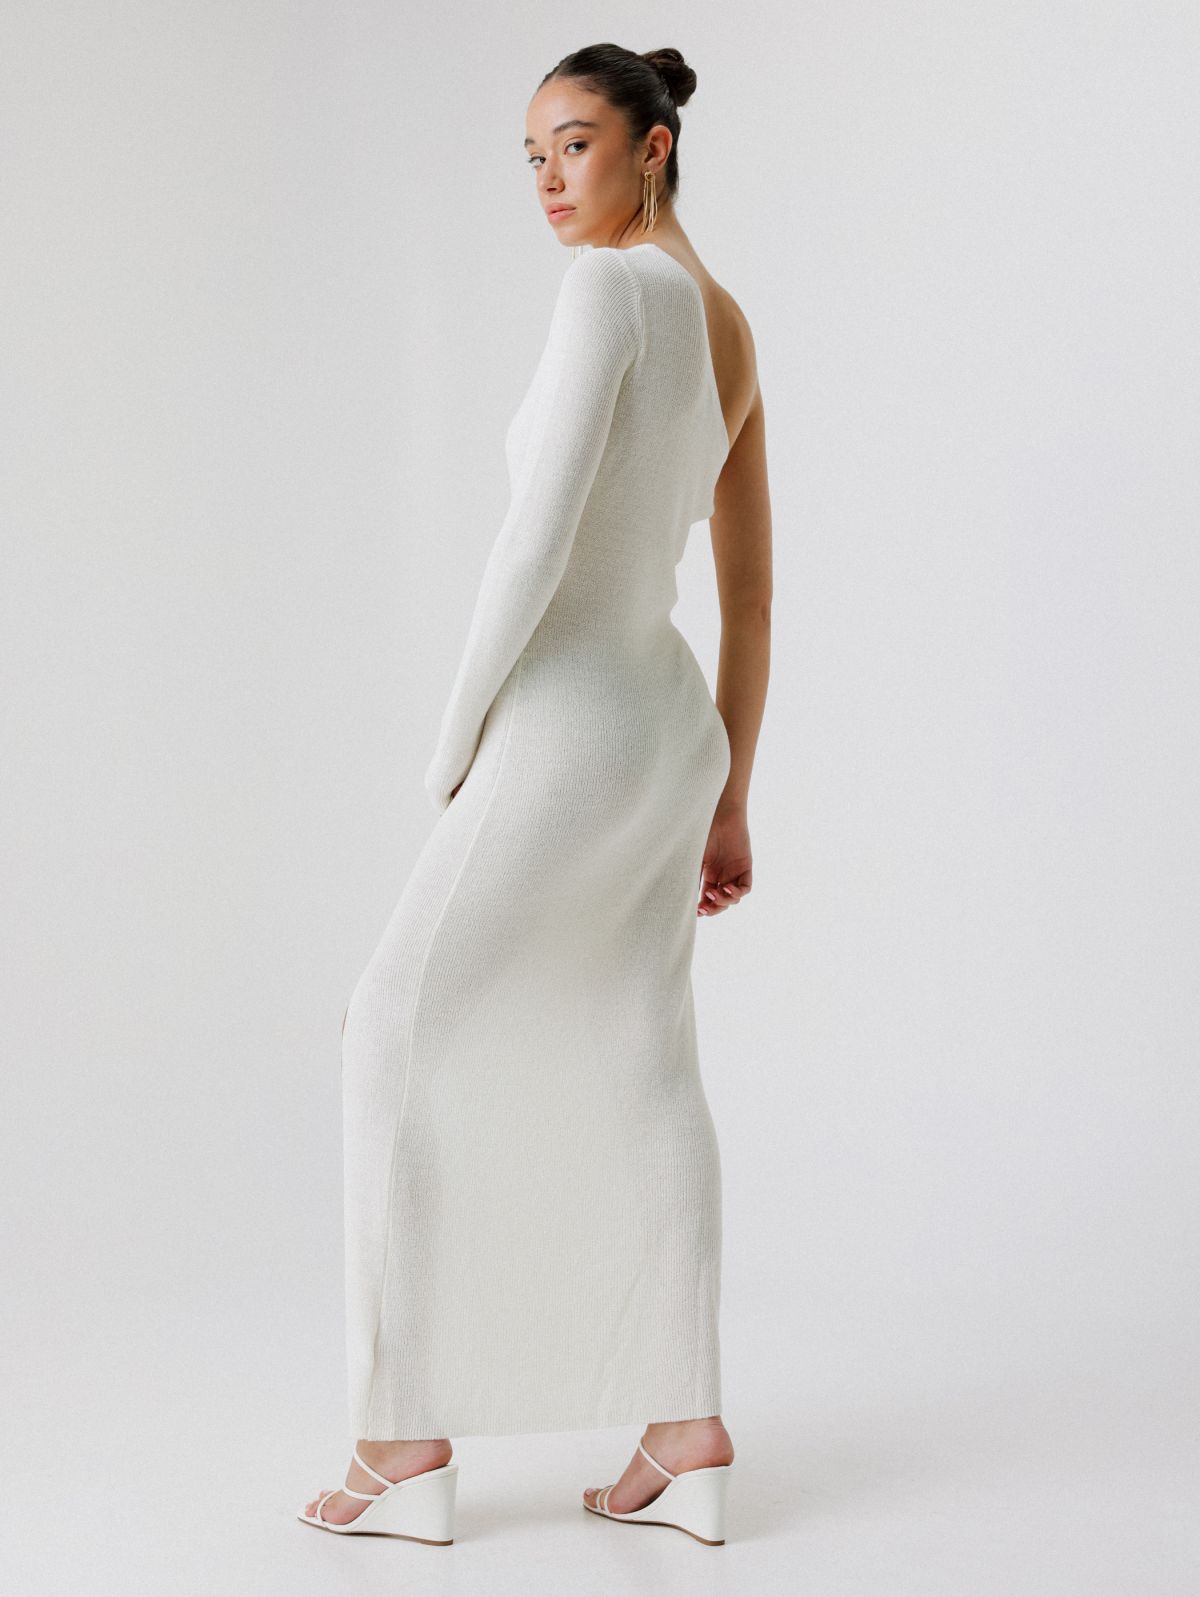  שמלת מקסי ואן שולדר שקפקפה של TERMINAL X